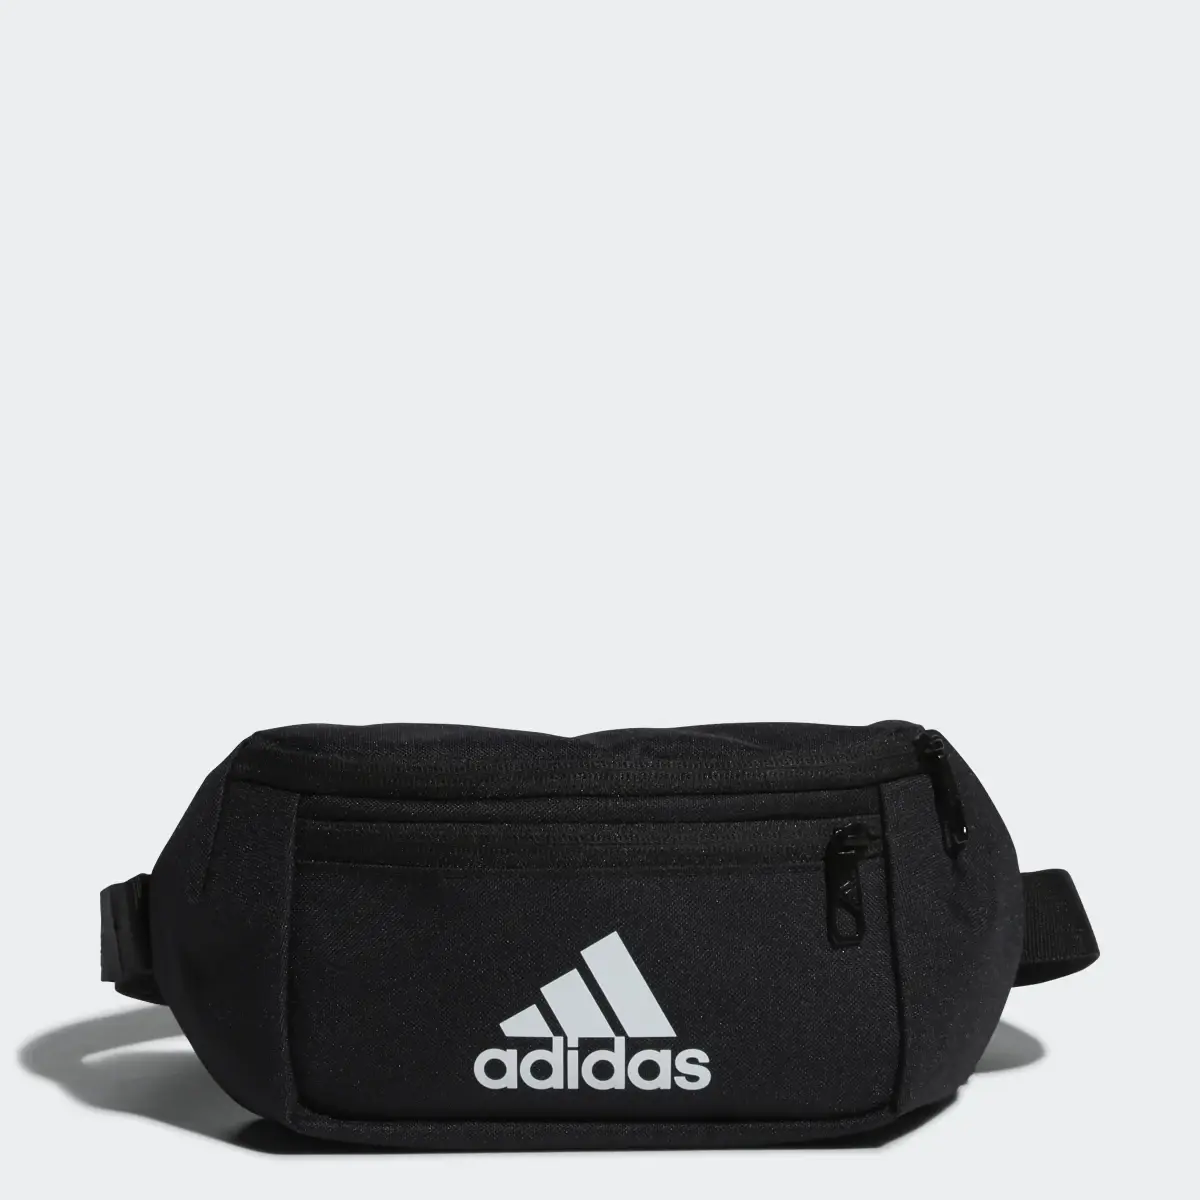 Adidas Classic Essential Waist Bag. 1